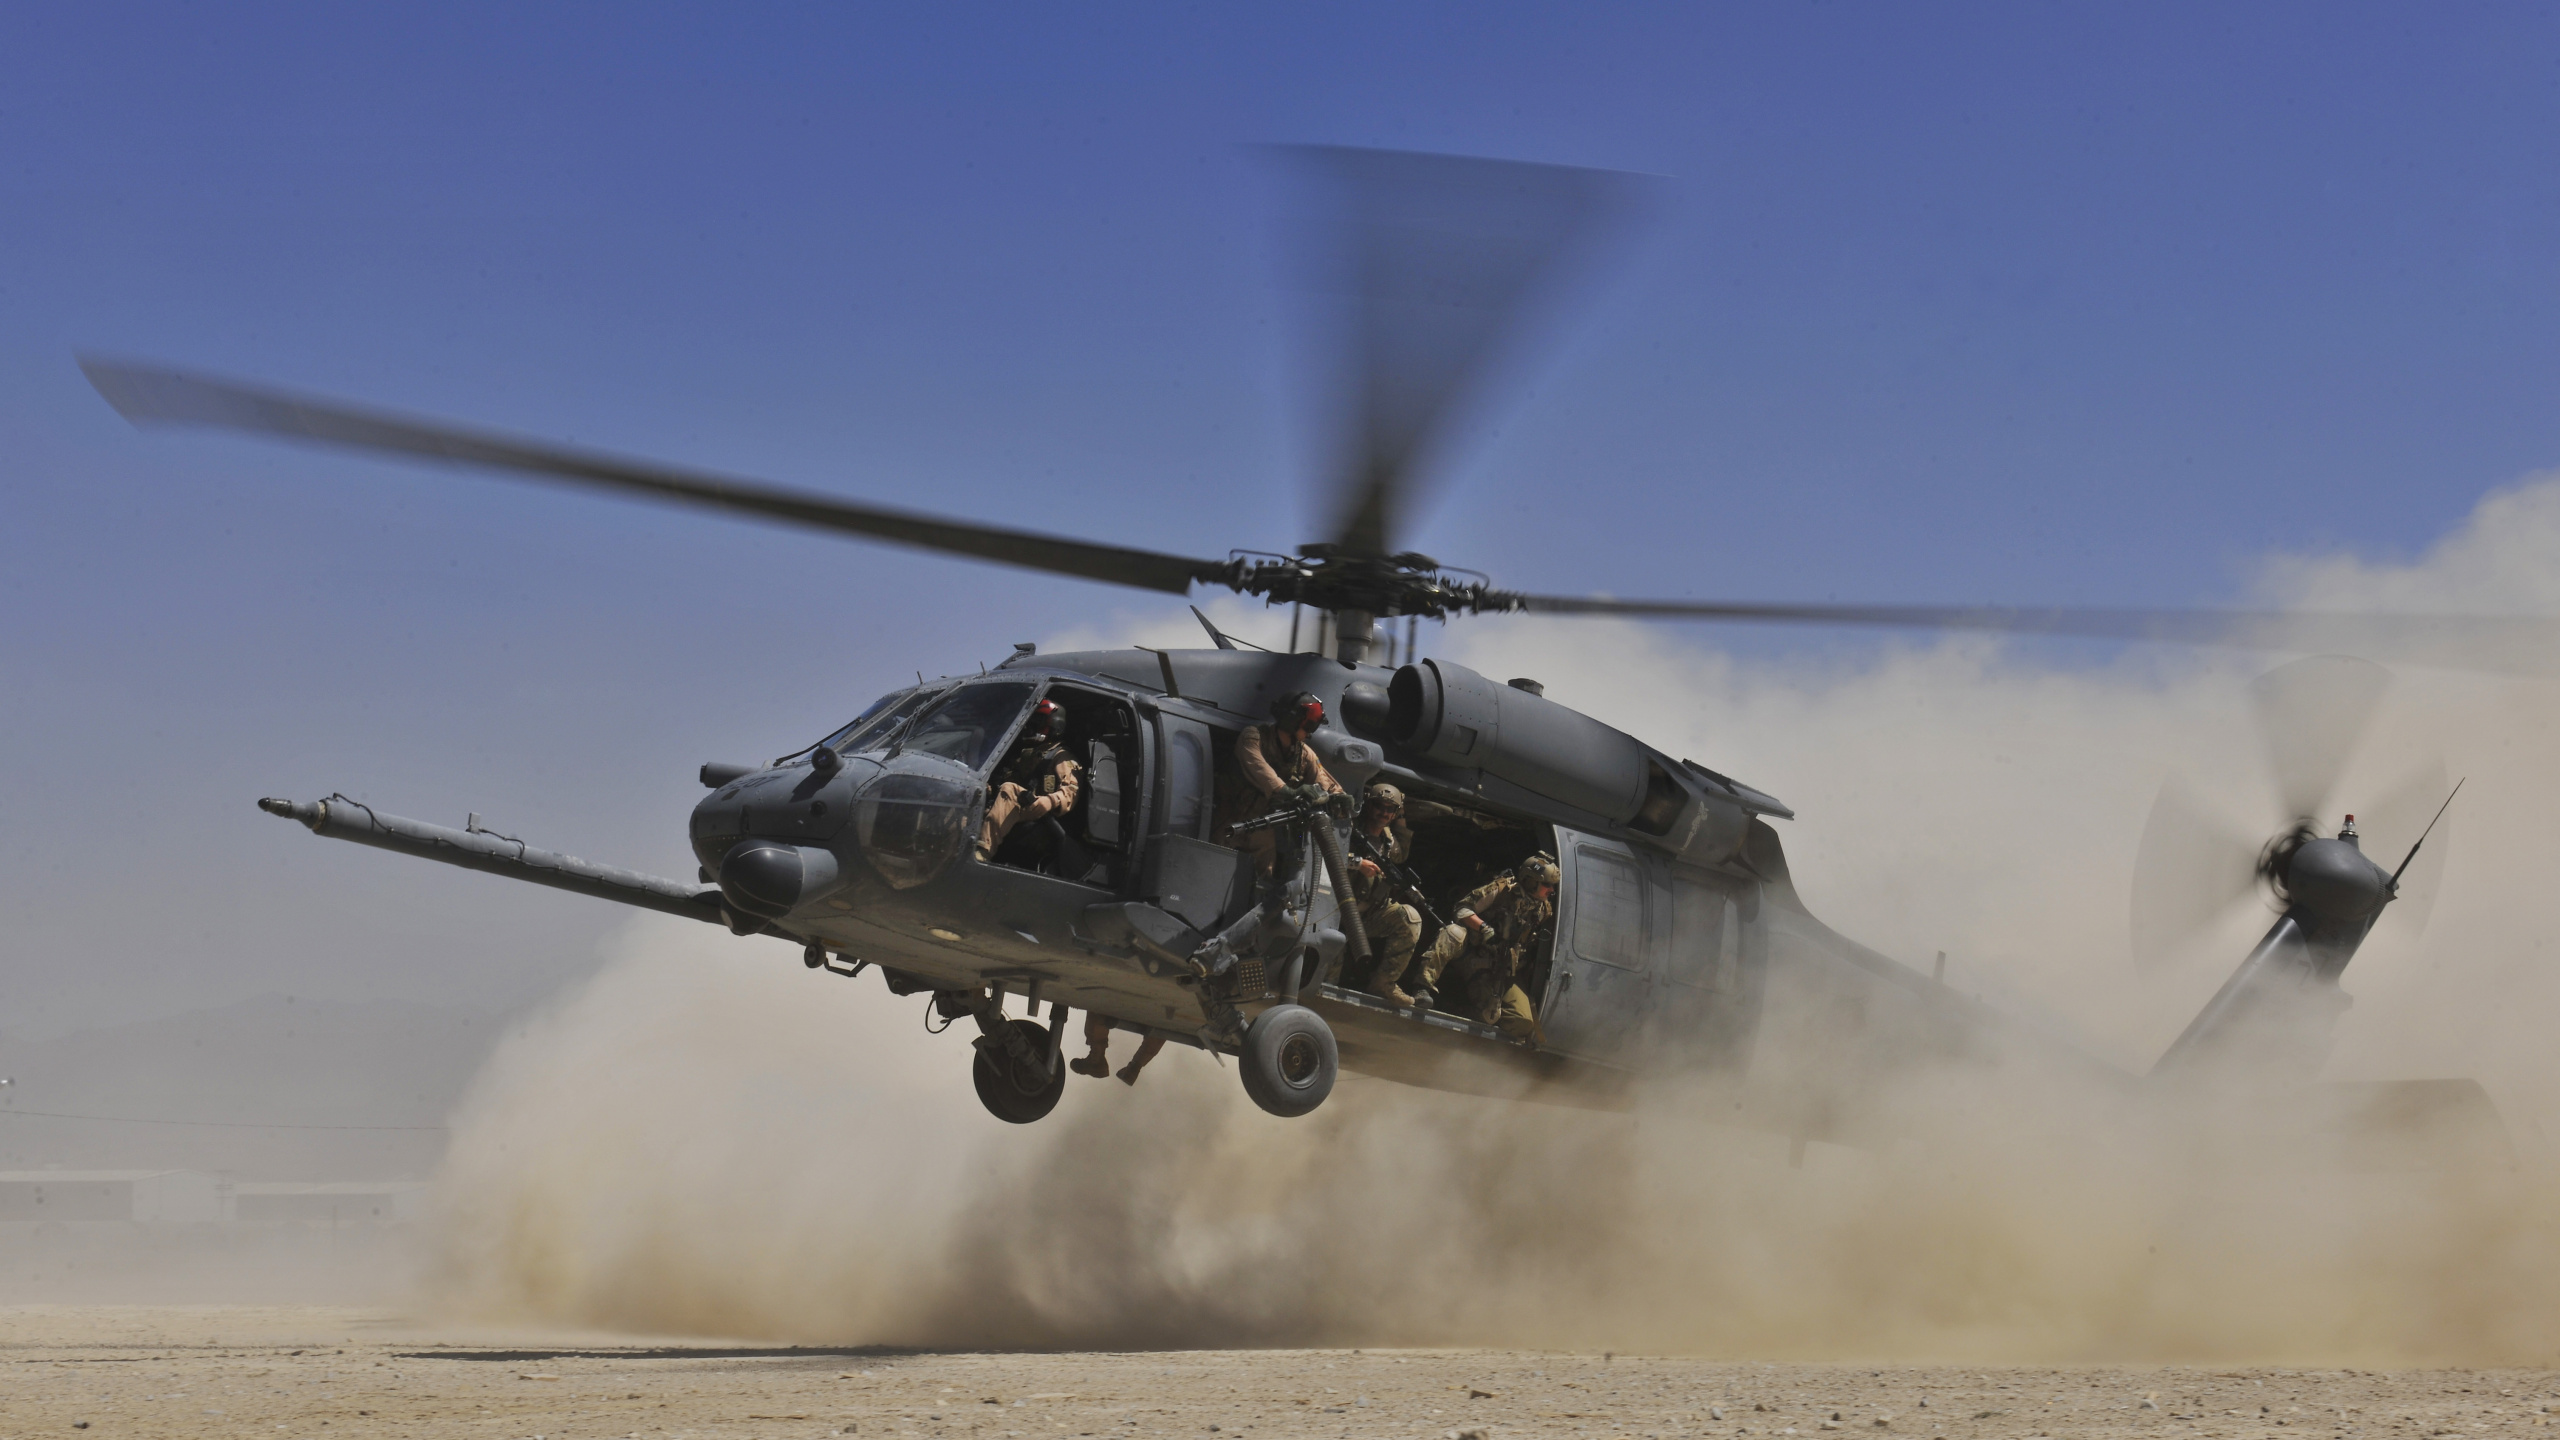 直升机, 军用直升机, 用直升机, 直升机转子的, 旋翼飞机 壁纸 2560x1440 允许